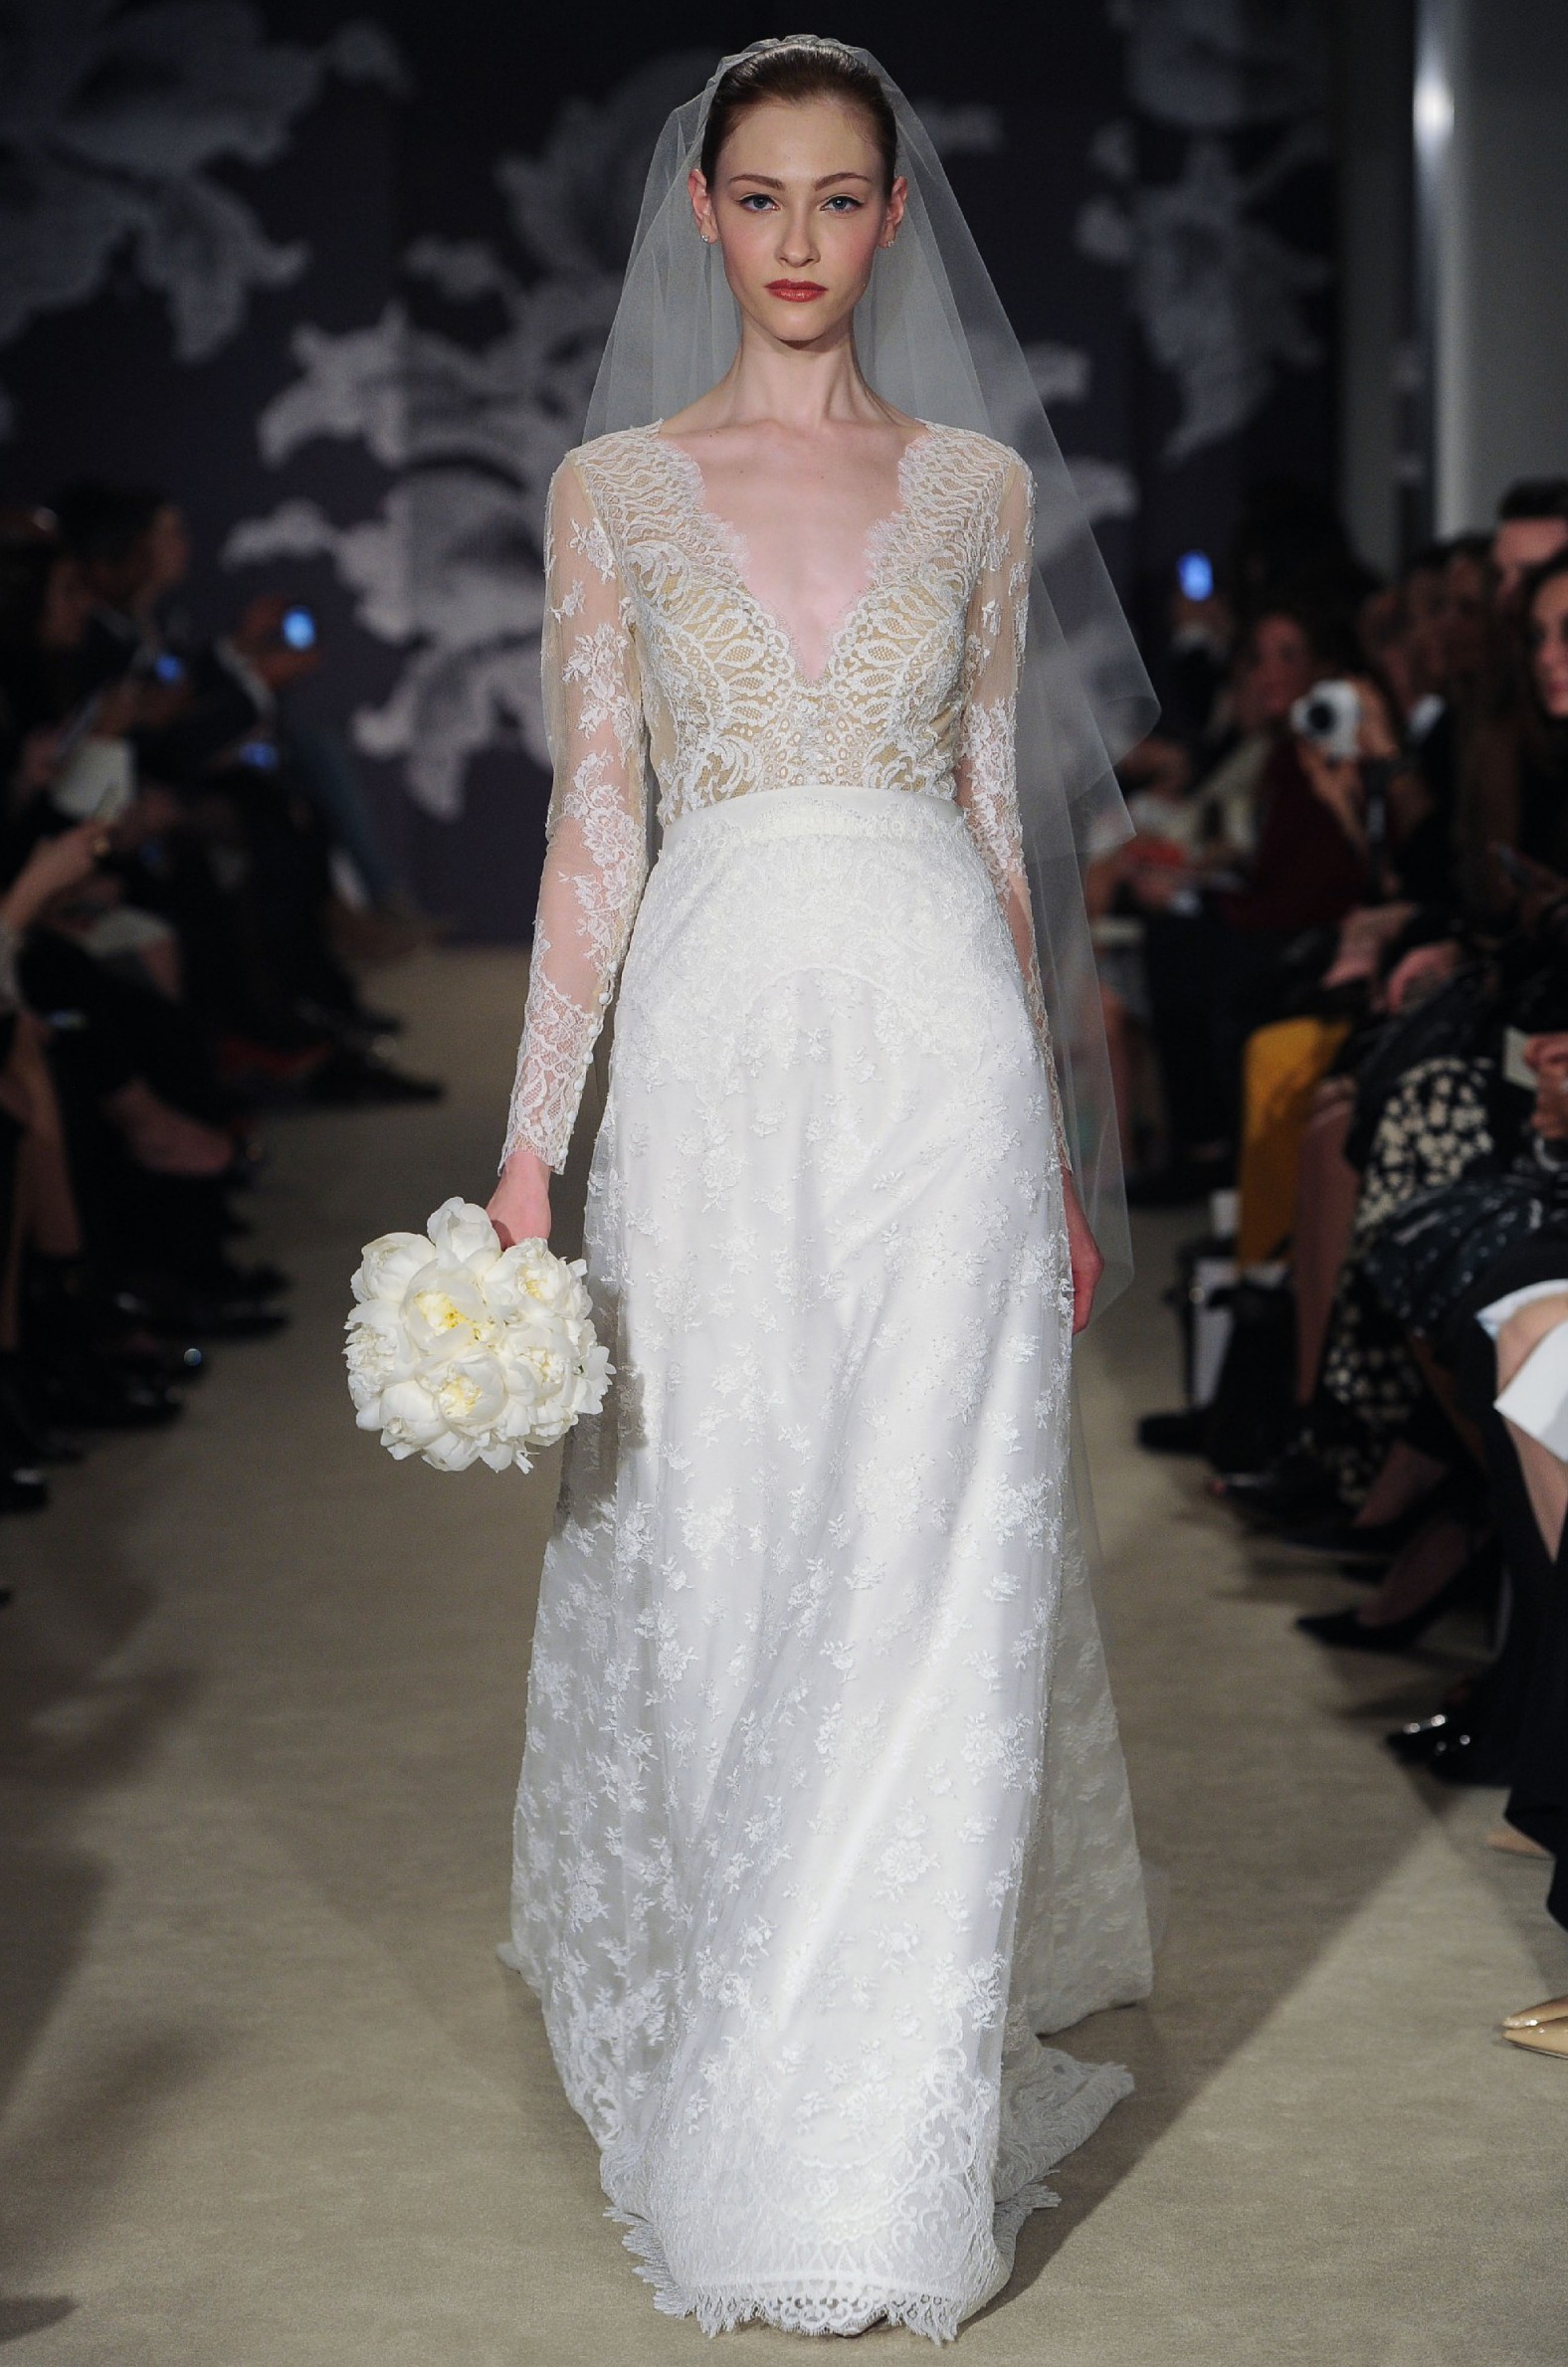 Carolina Herrera New Claudette Gown New Wedding Dress Save 57% - Stillwhite